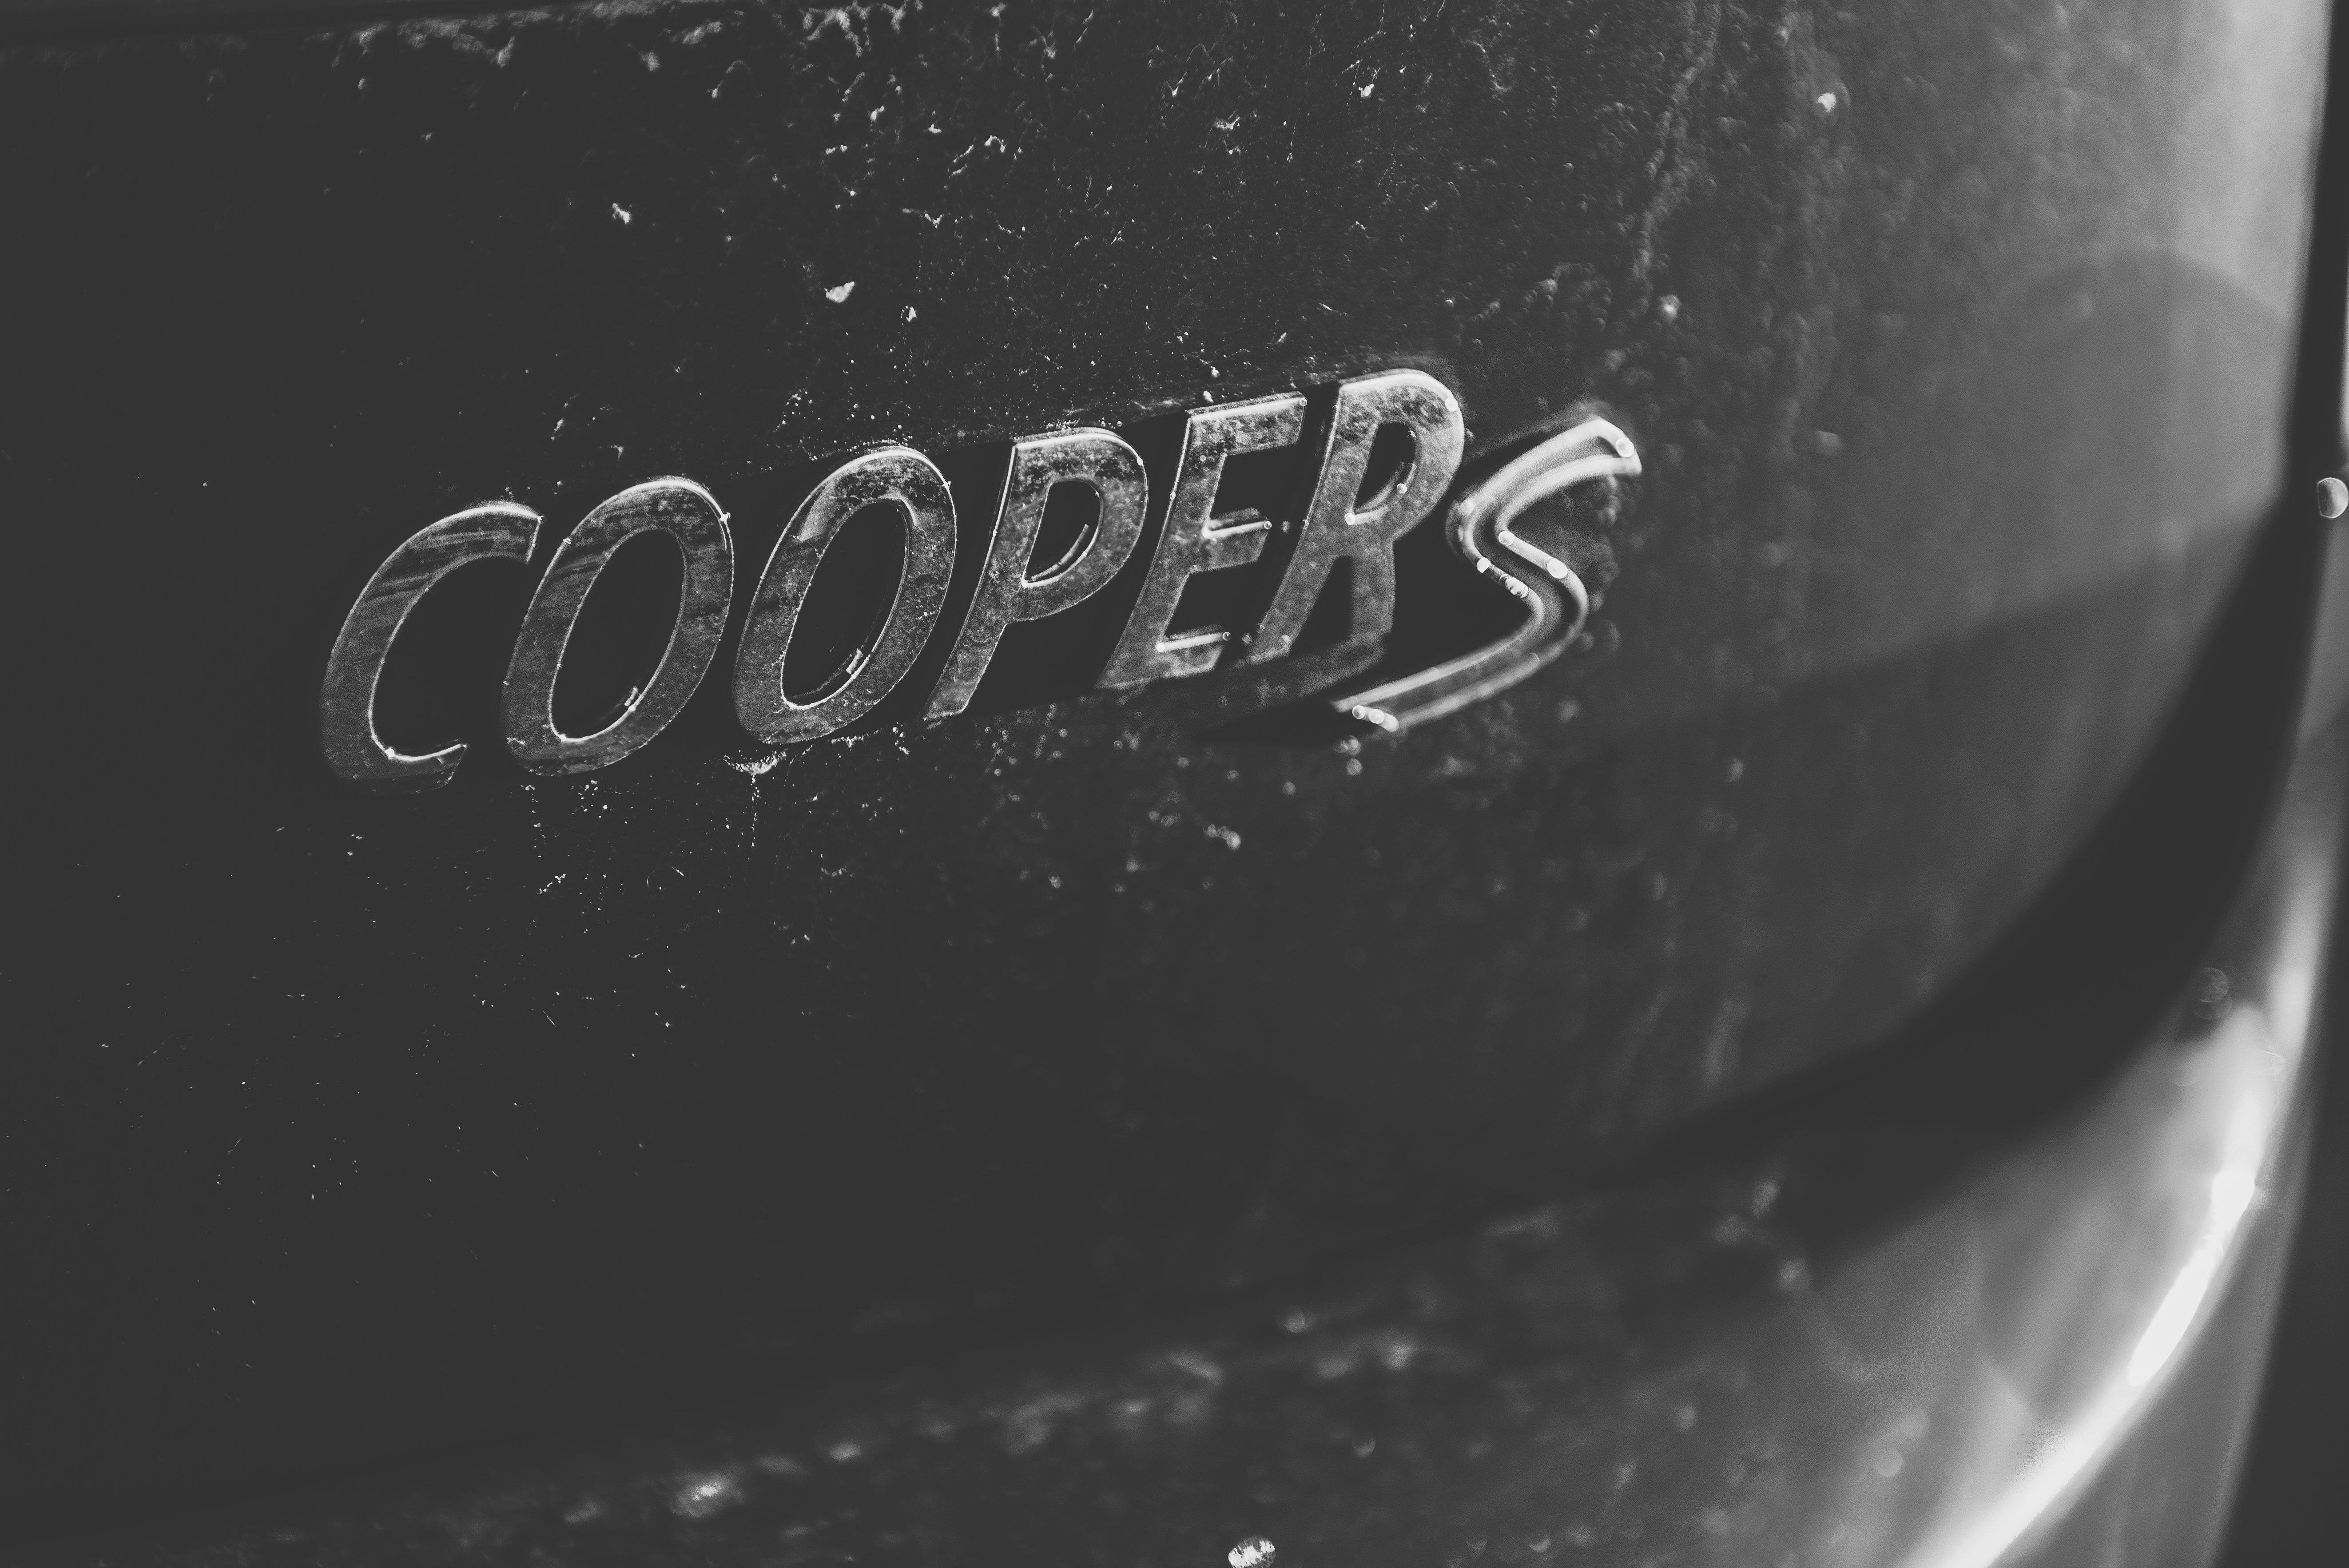 MINI Cooper Clubman S (2016)